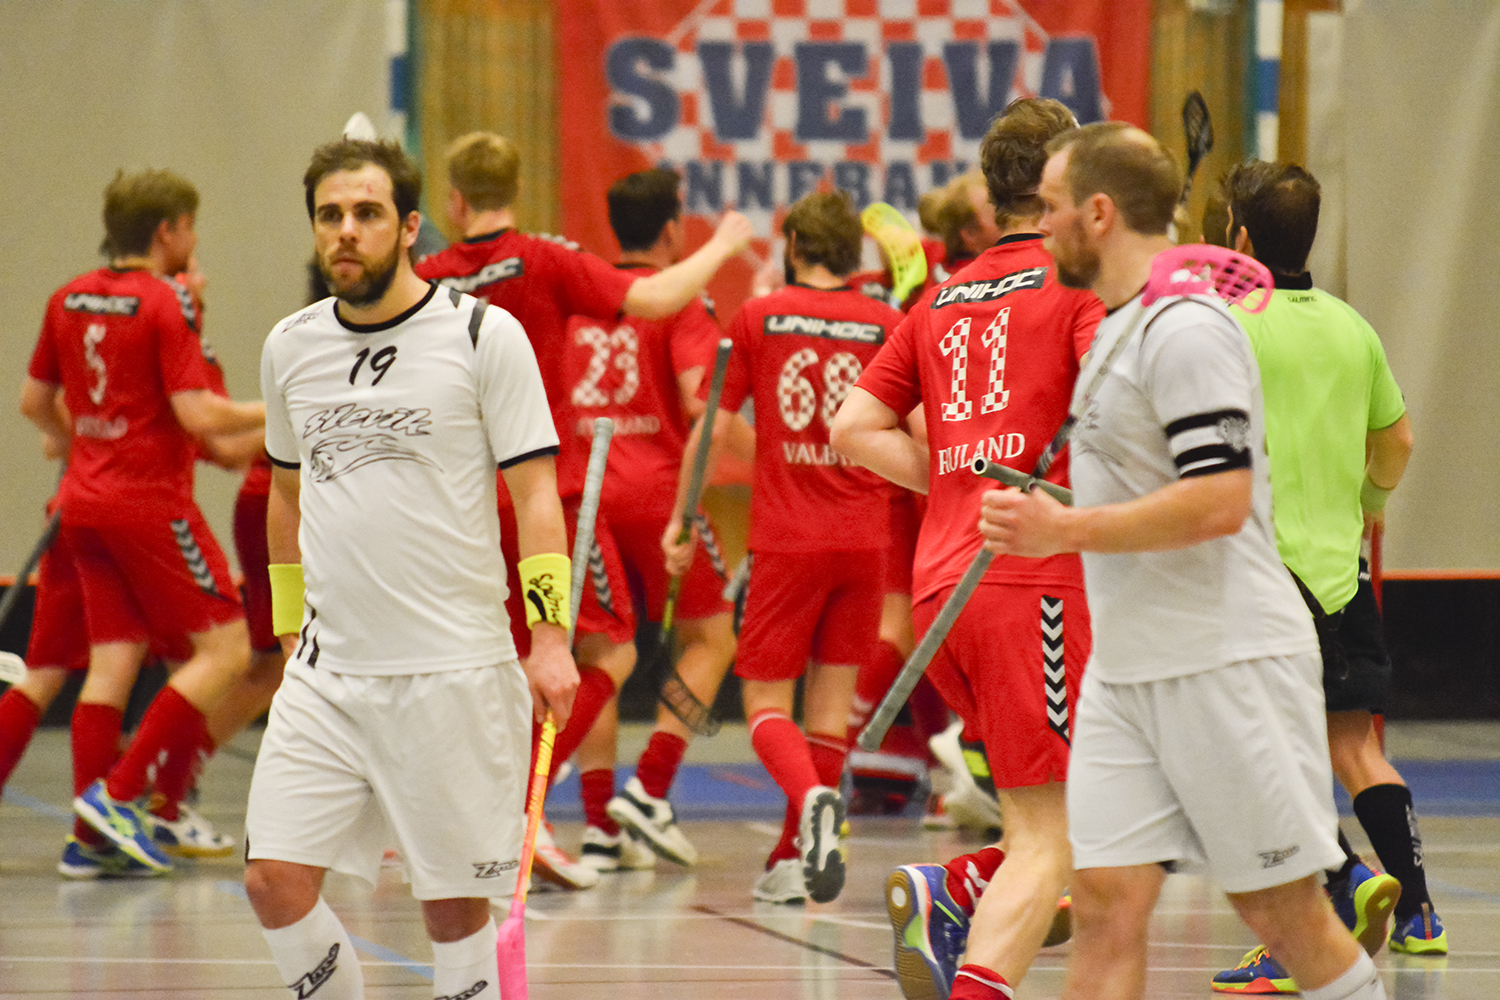 Sveiva-herrene imponerte på nytt da Slevik ble beseiret med 3-2 i den andre semifinalen.